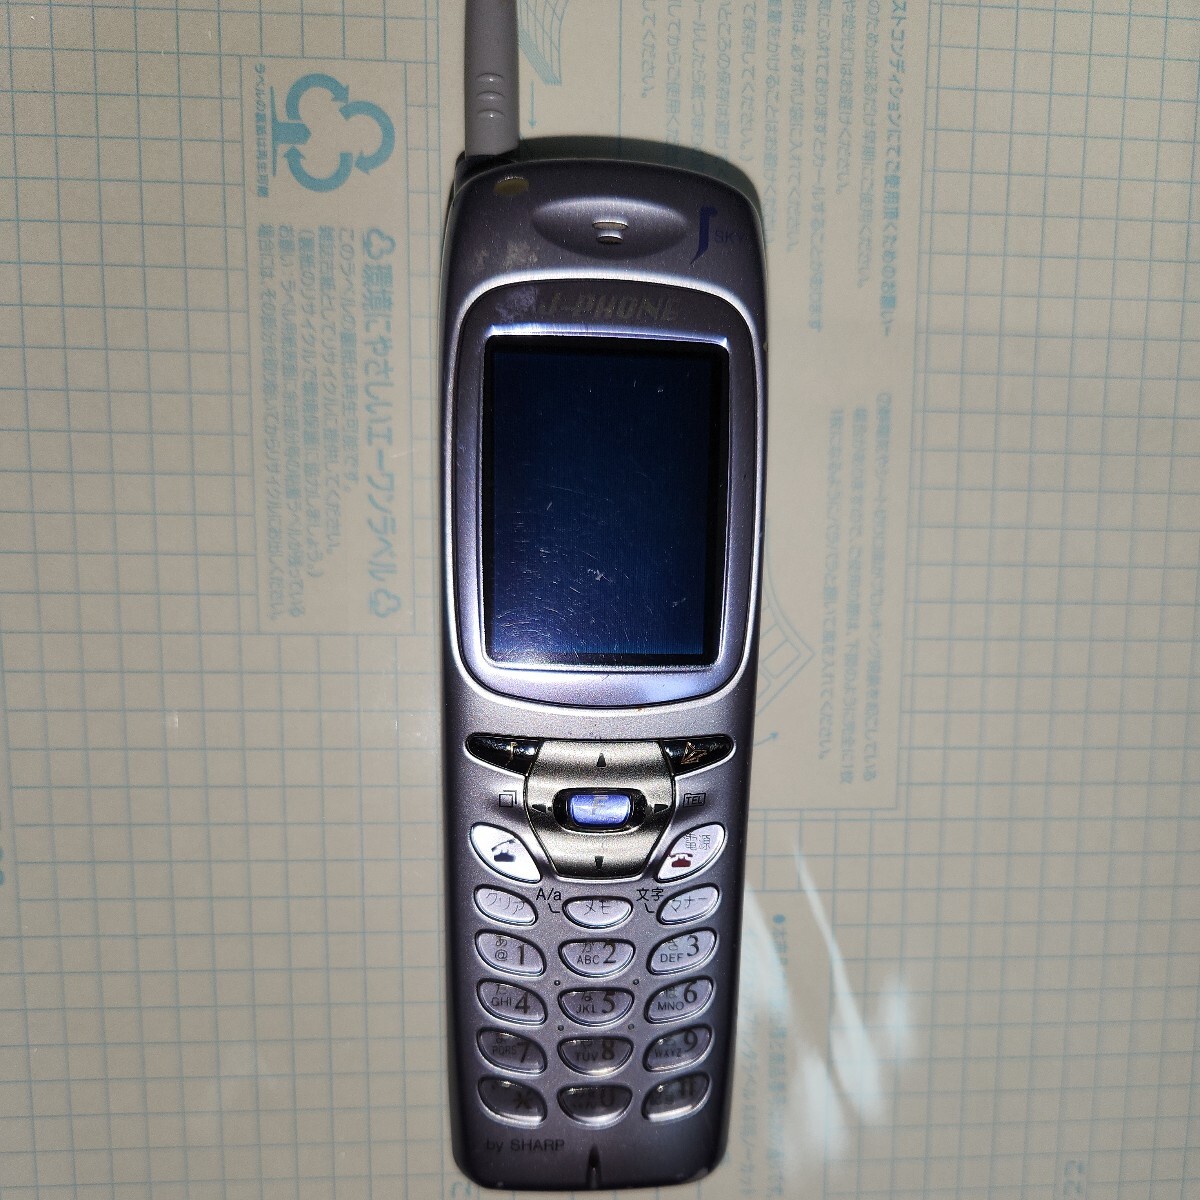 J-SH04 携帯電話 J-PHONE SHARP の画像1